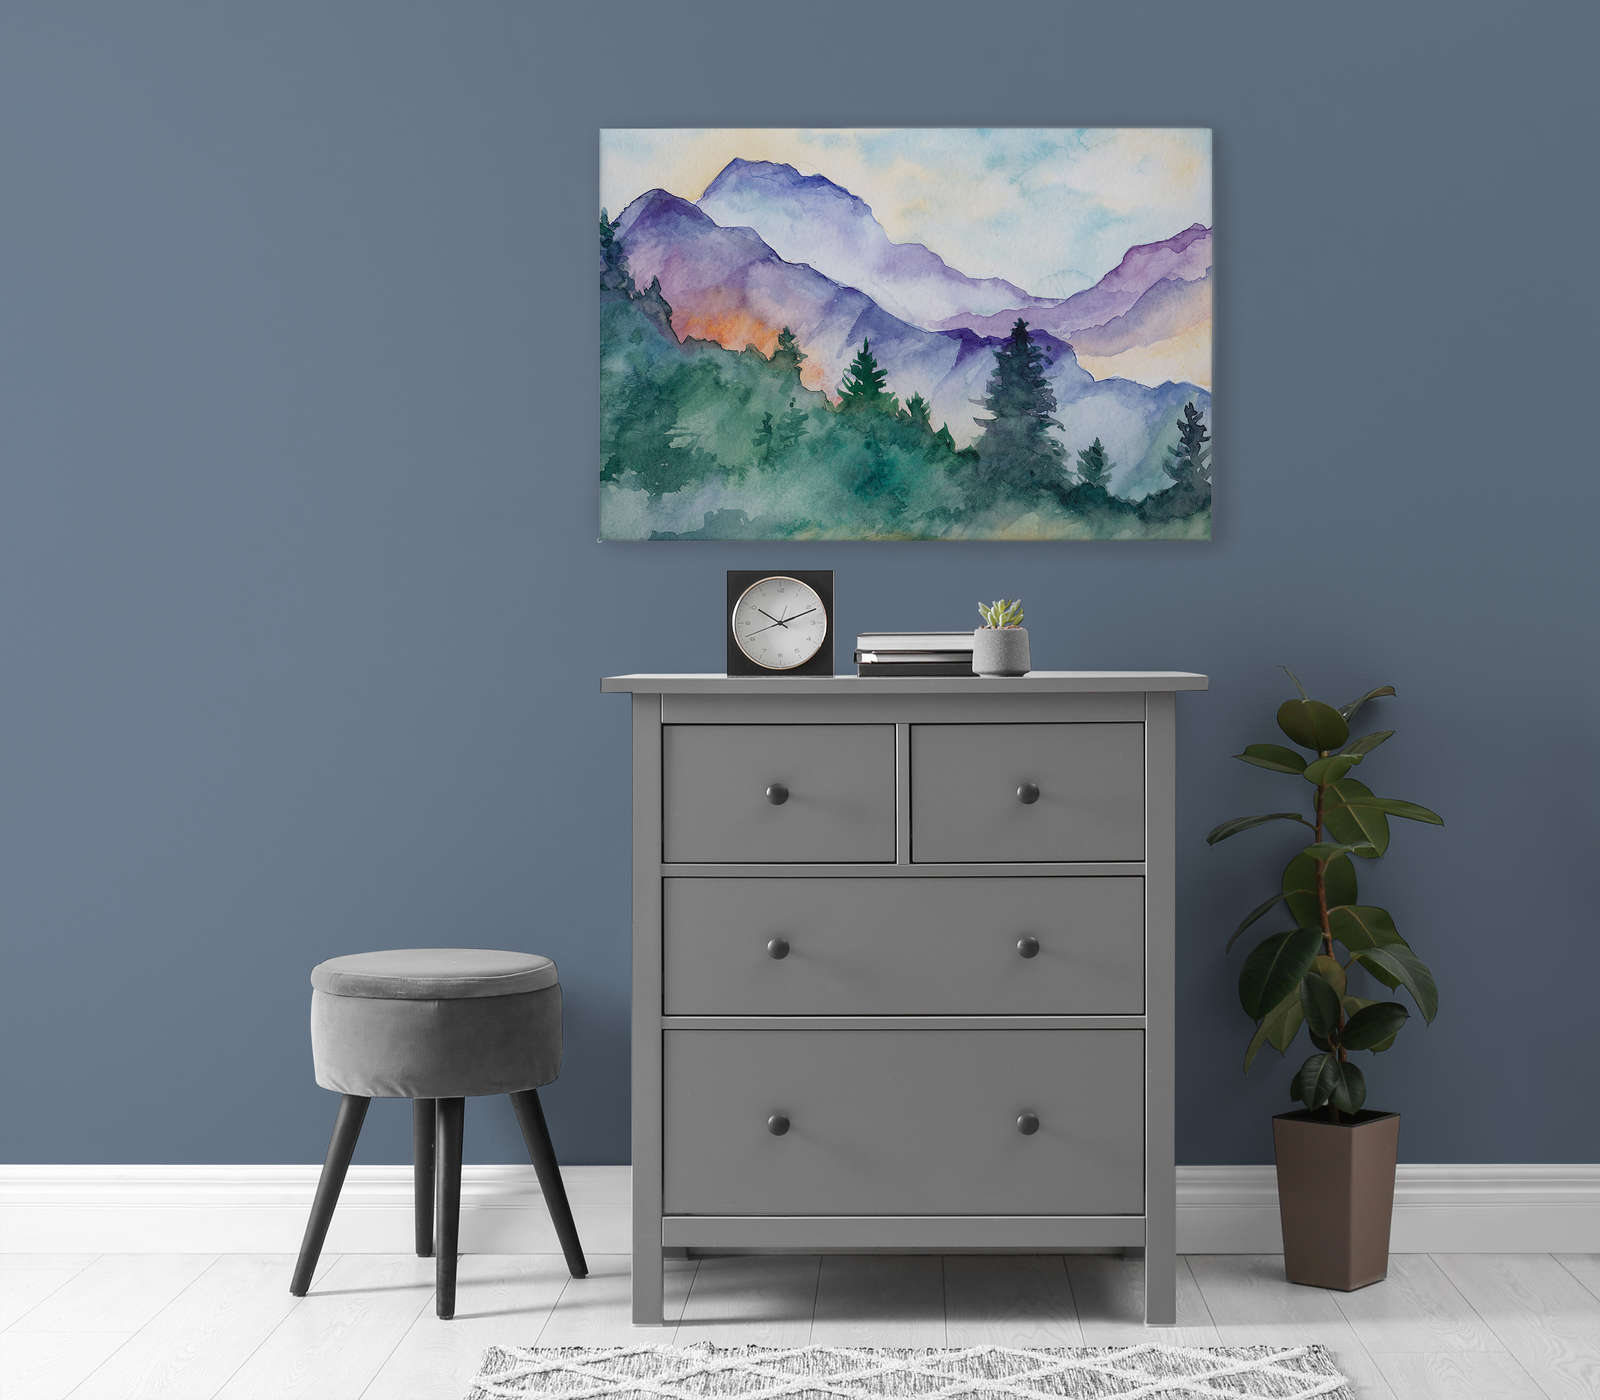             Toile Paysage de montagne peinte à l'aquarelle - 0,90 m x 0,60 m
        